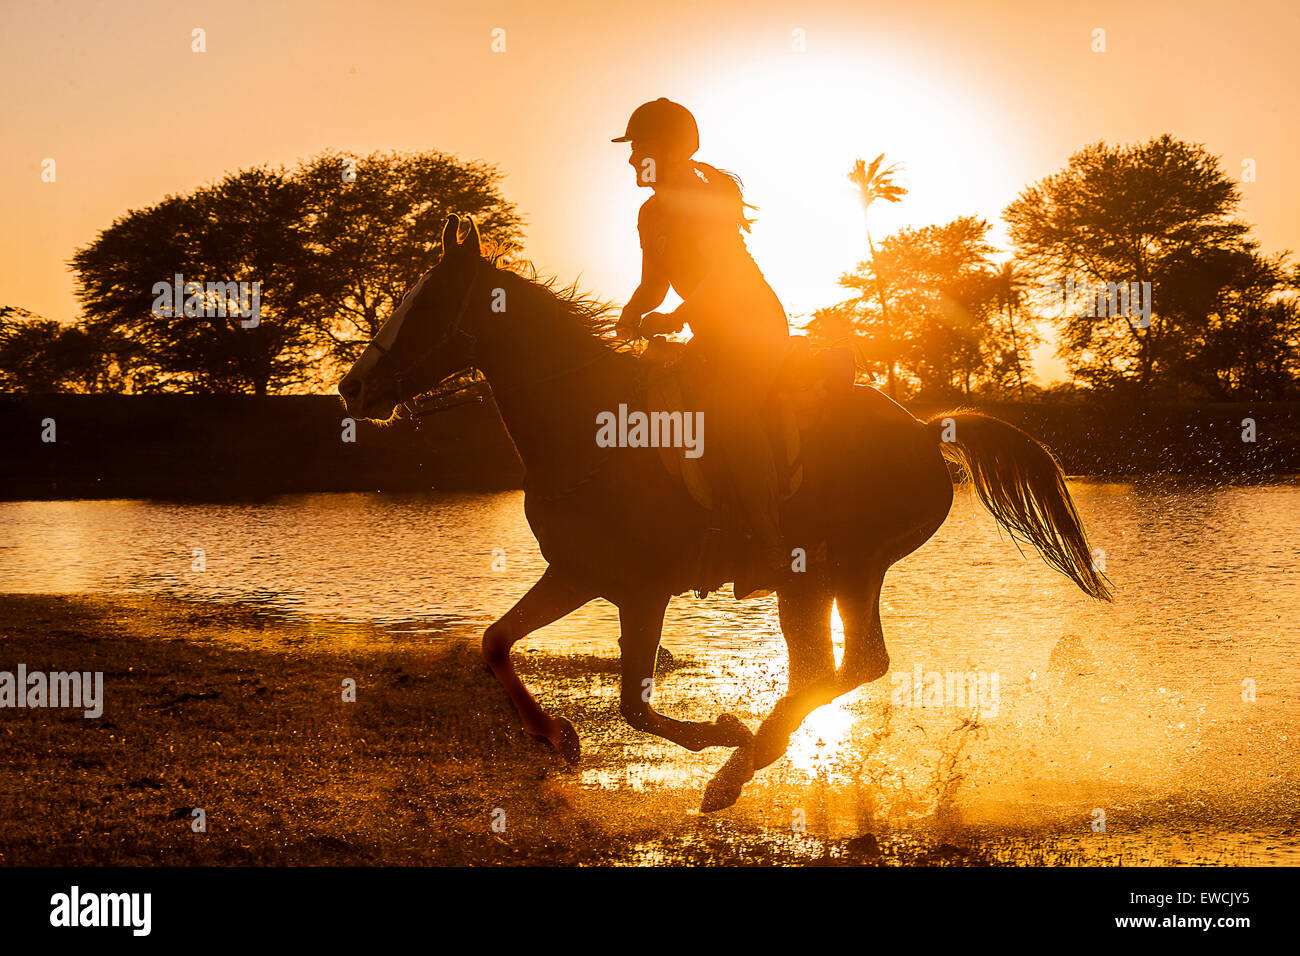 Kathiawari cavallo. Donna ciclista al galoppo su un castagno mare, stagliano contro il sole di setting. Rajasthan, India Foto Stock